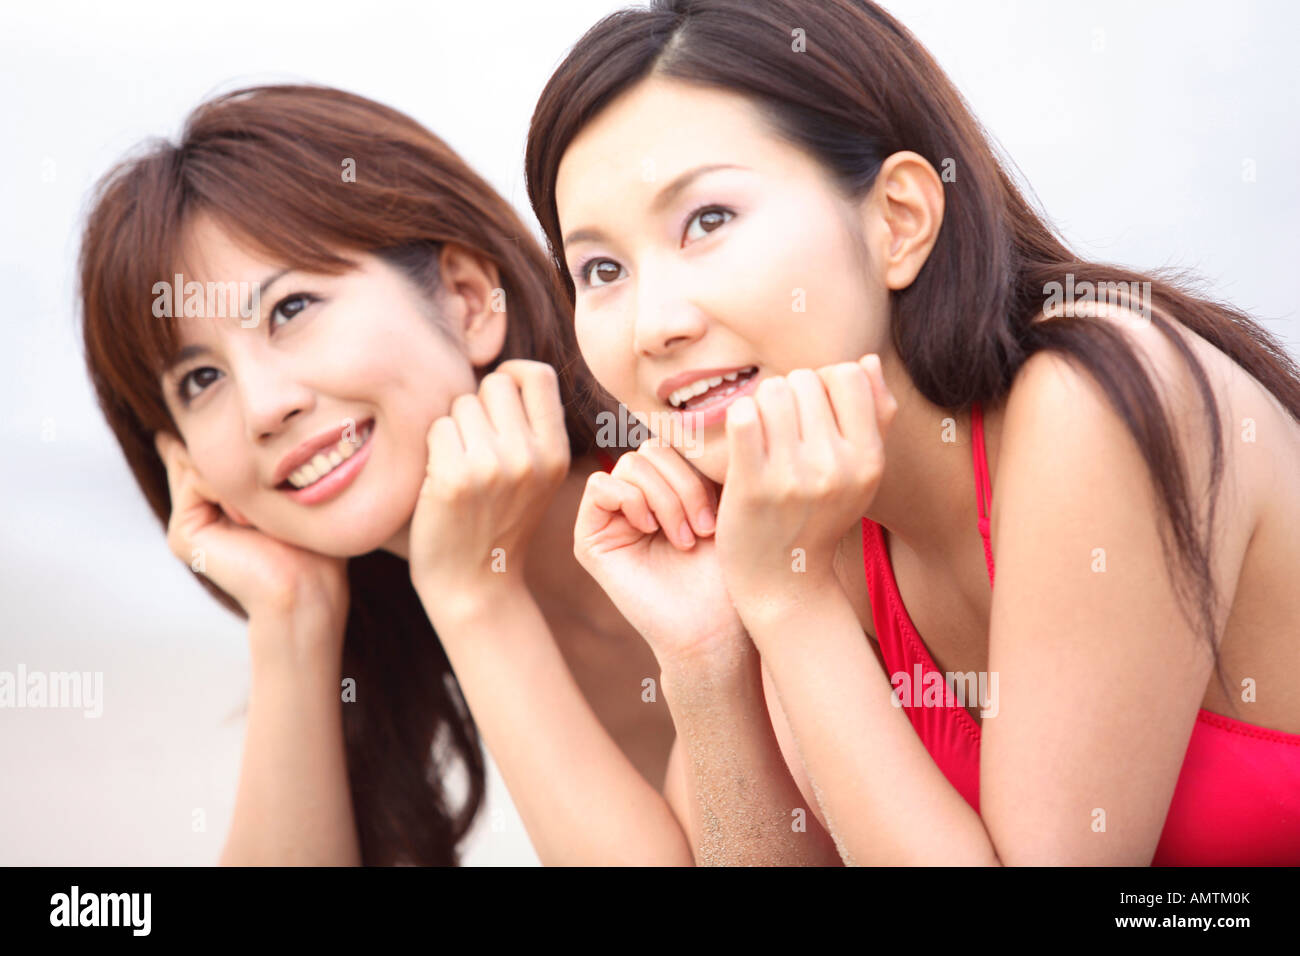 Las mujeres japonesas en traje de baño Foto de stock